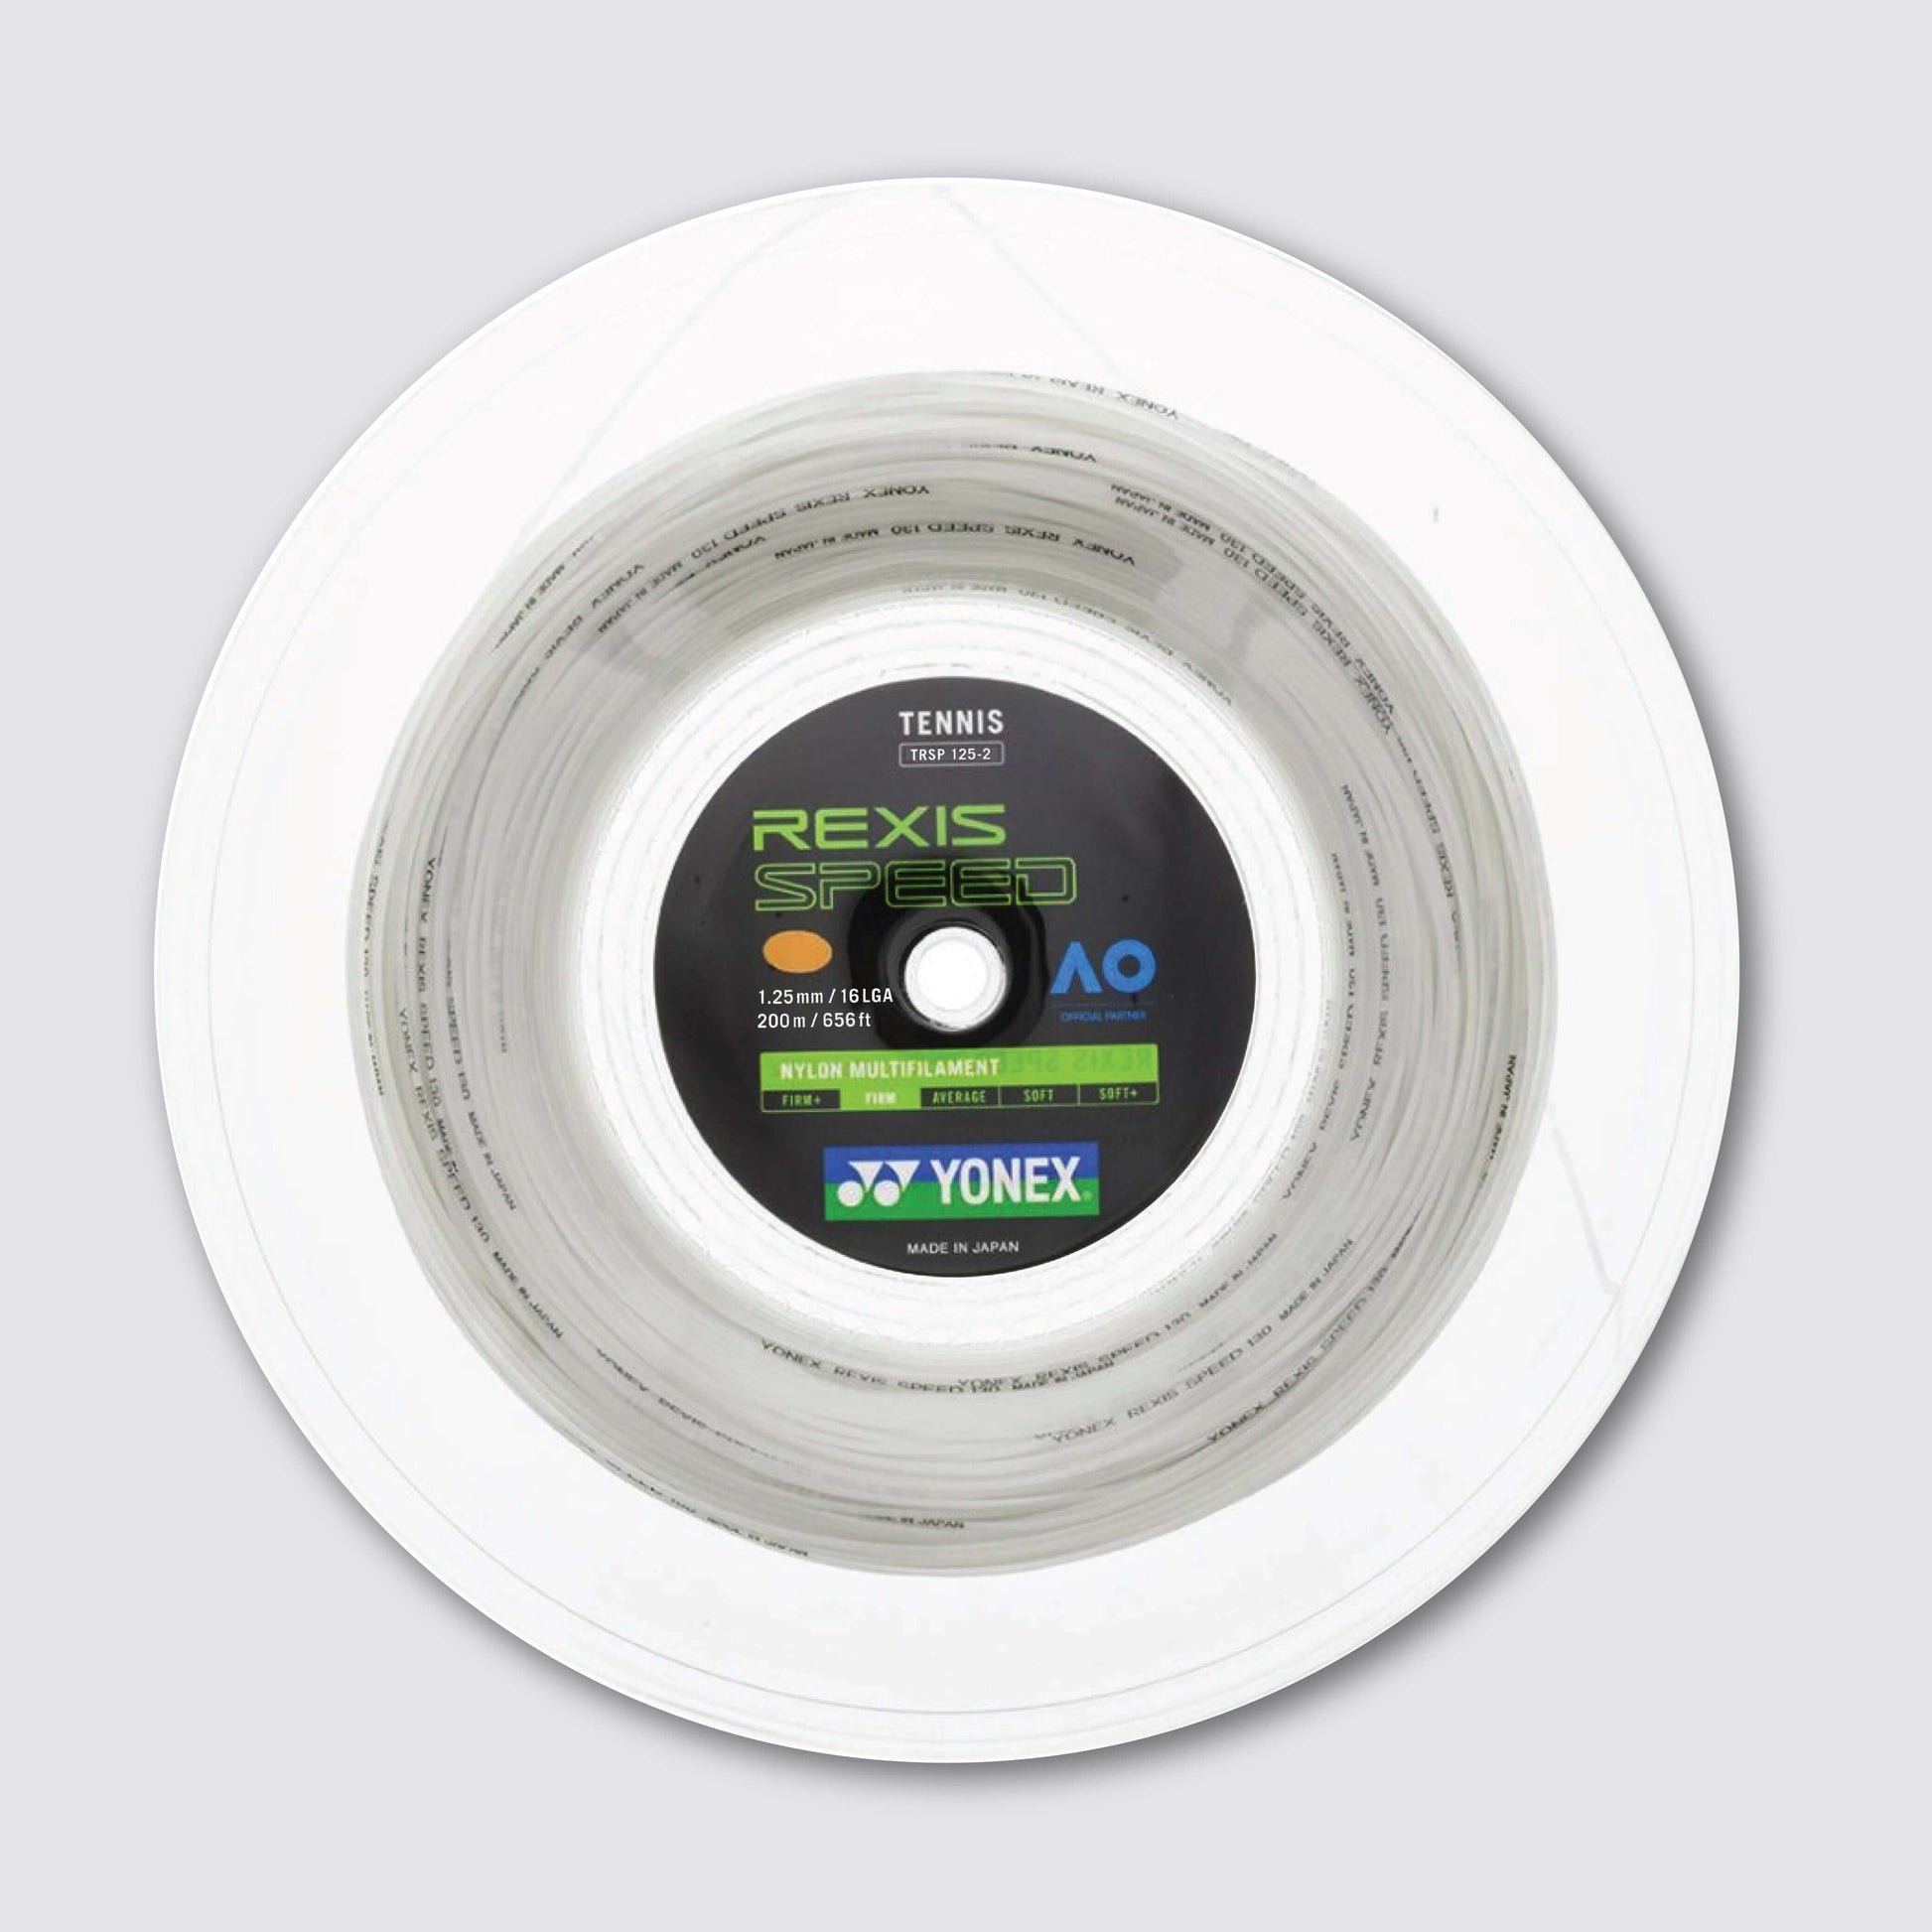 Yonex Rexis Speed 125 / 16L  200m Tennis String Reel (White)